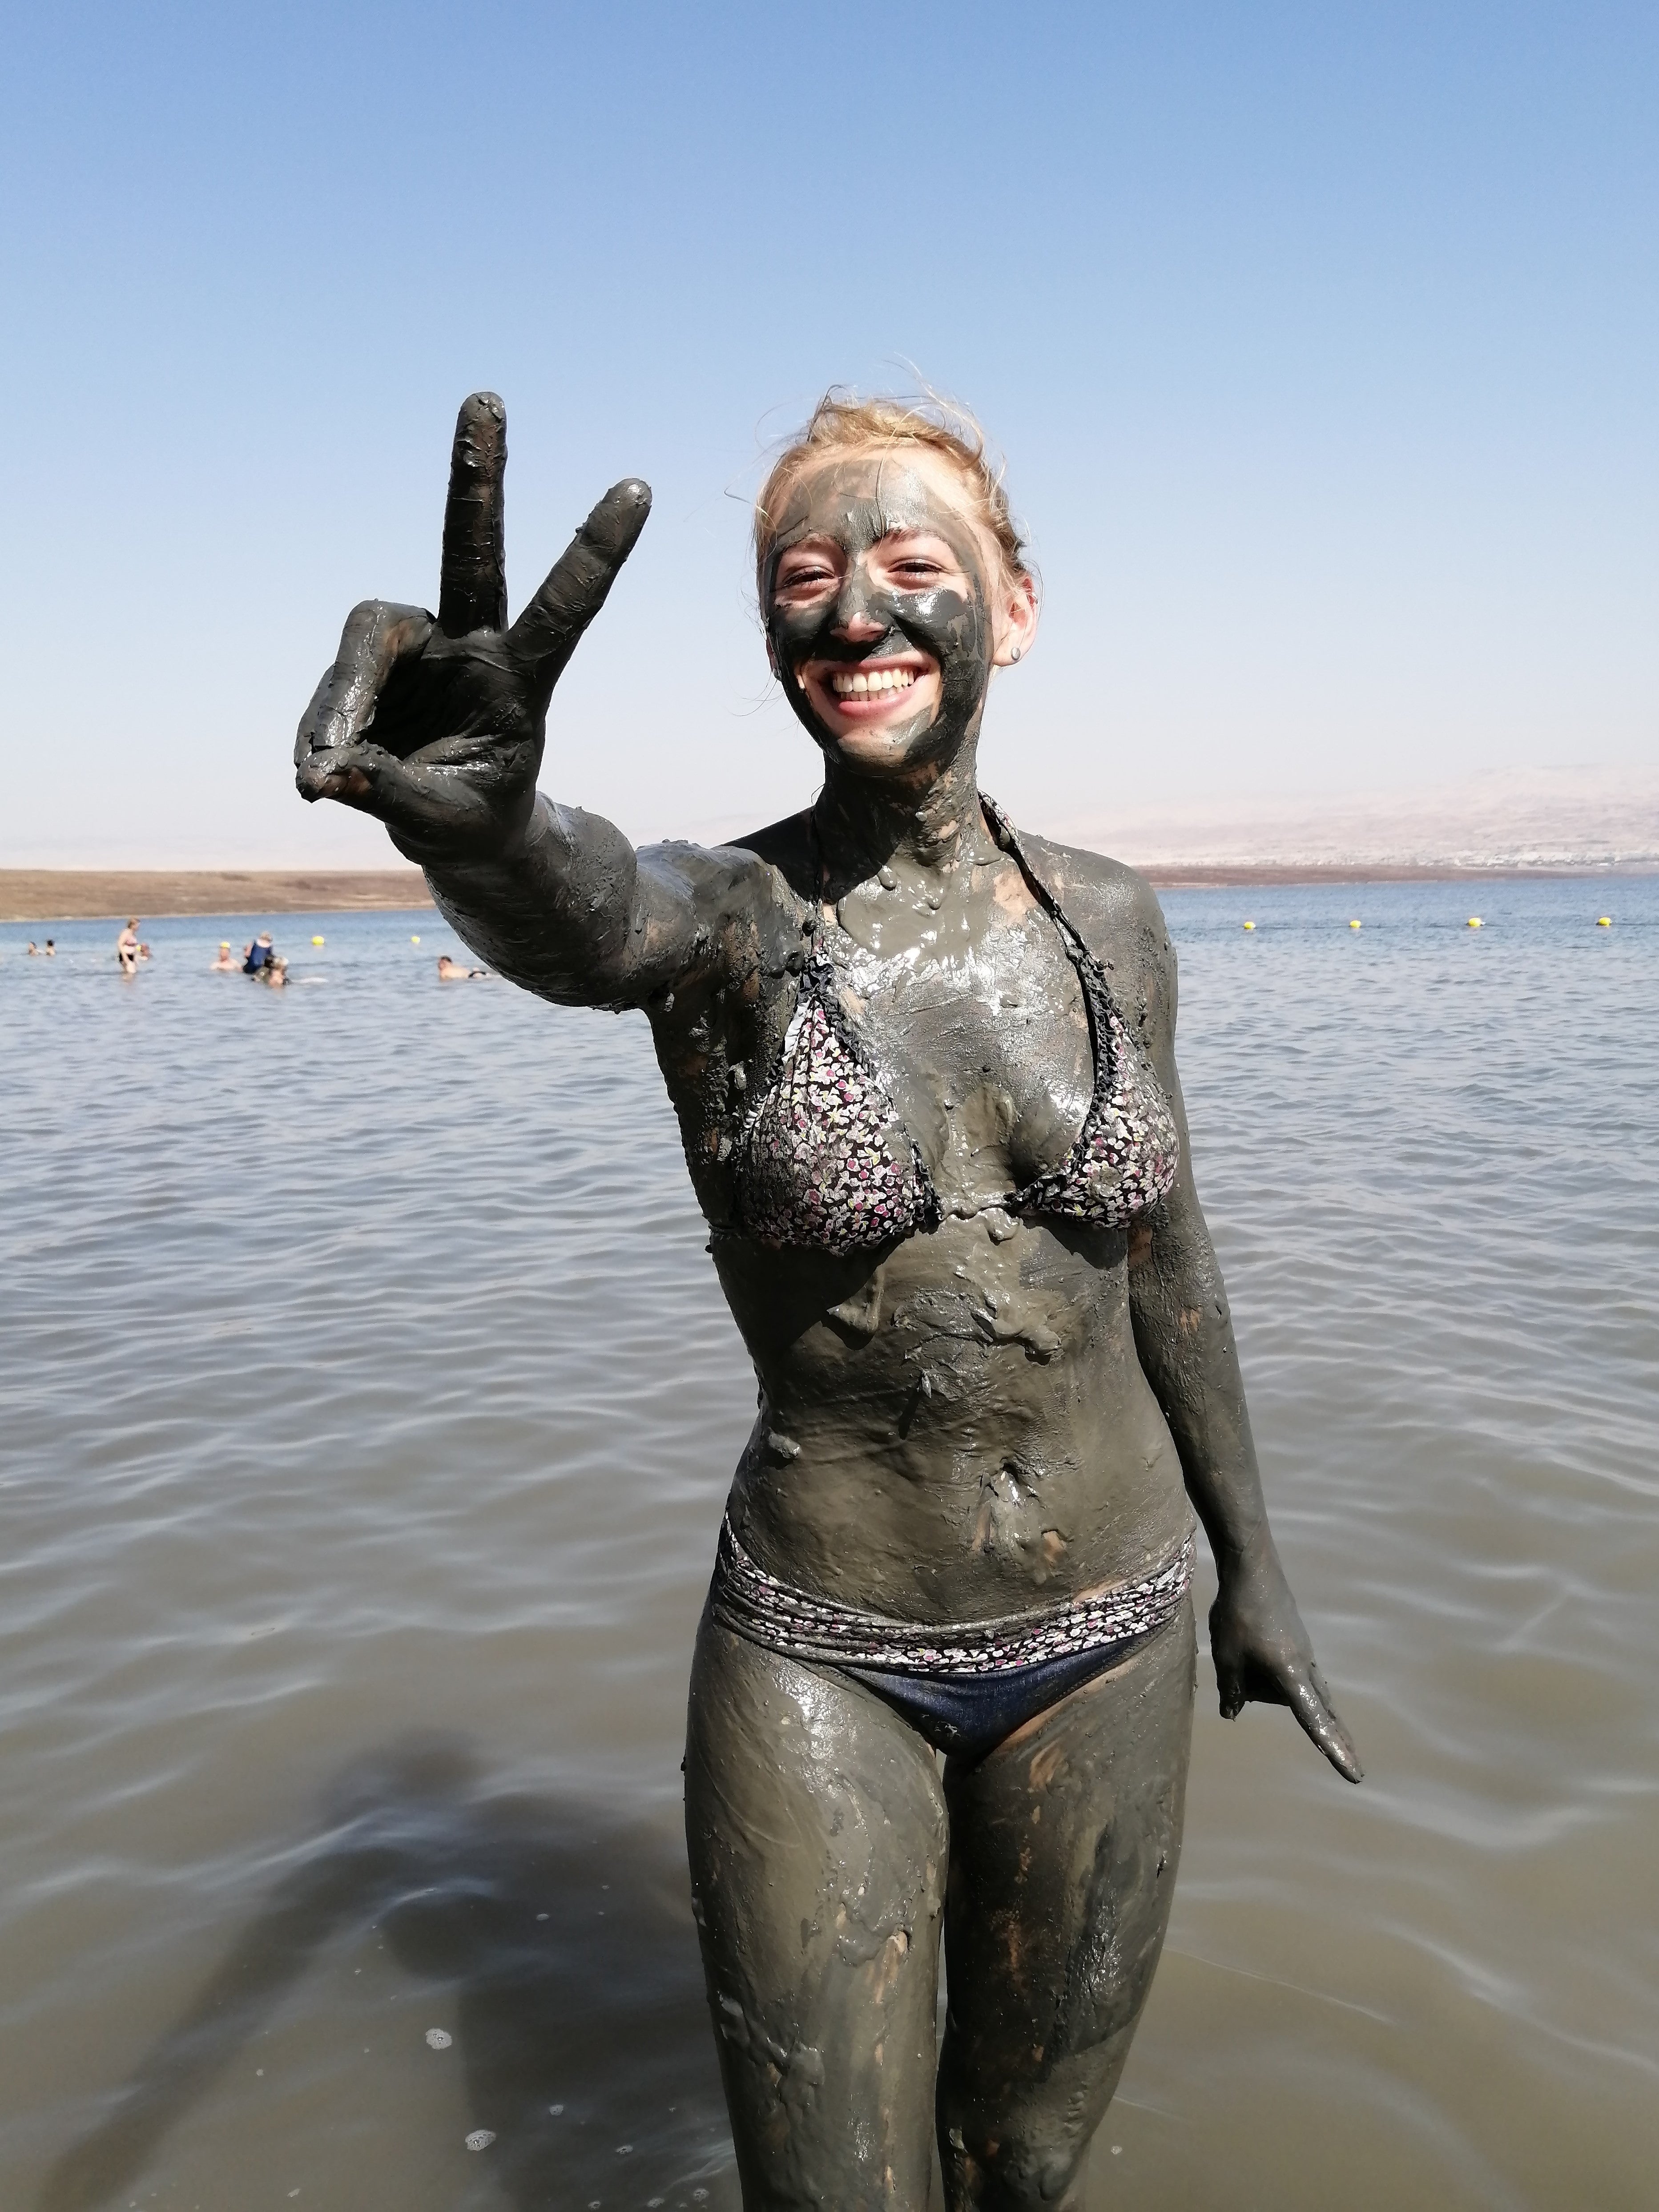 Masada & The Dead Sea - Shared Tour